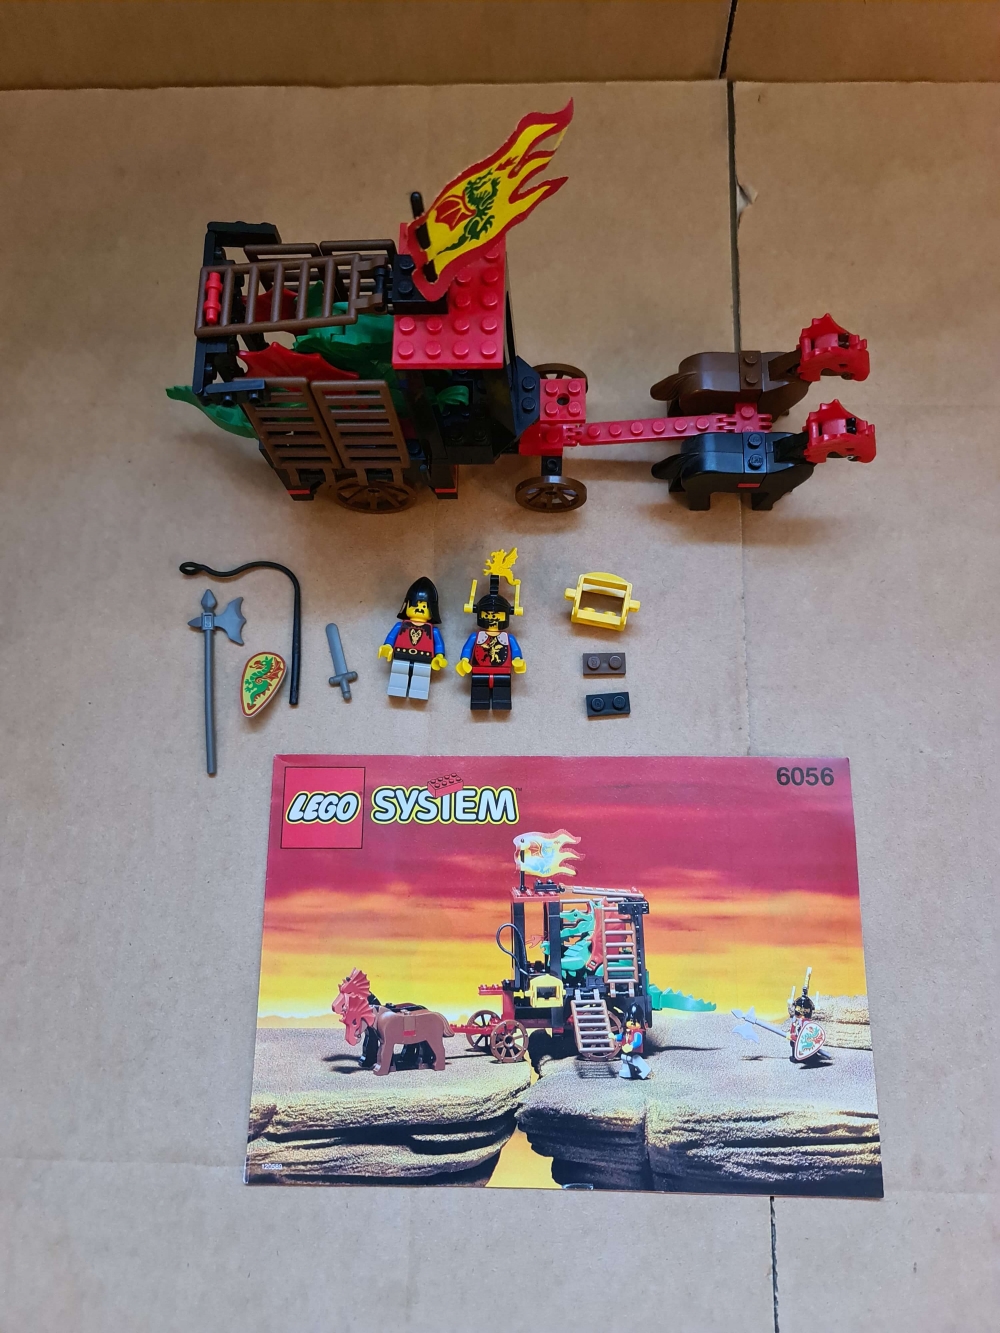 Sett 6056 fra Lego Castle : Dragon Knights serien.
Flott sett.
Komplett med manual.